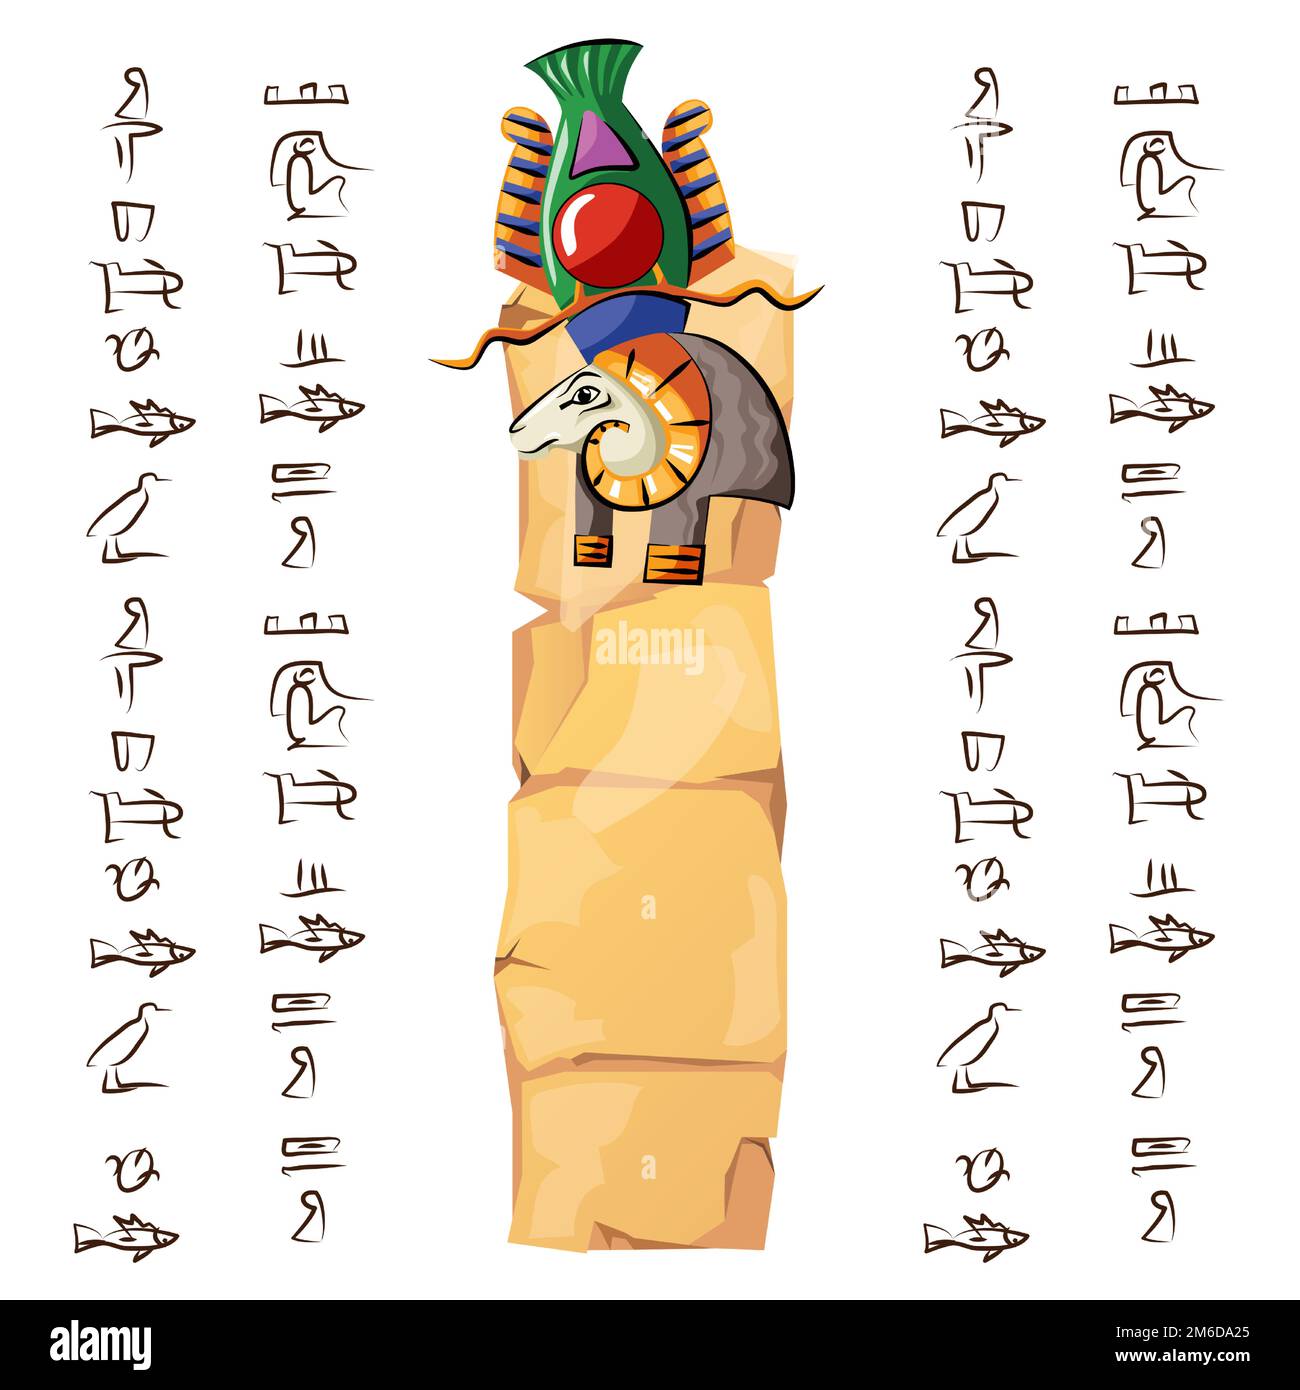 Alte ägyptische Papyrus- oder Steinsäule mit Rammbock-Karikatur-Vektordarstellung. Altes Papier mit Hieroglyphen zur Speicherung von Informationen, ägyptisches Kultursymbol, isoliert auf weißem Hintergrund Stock Vektor